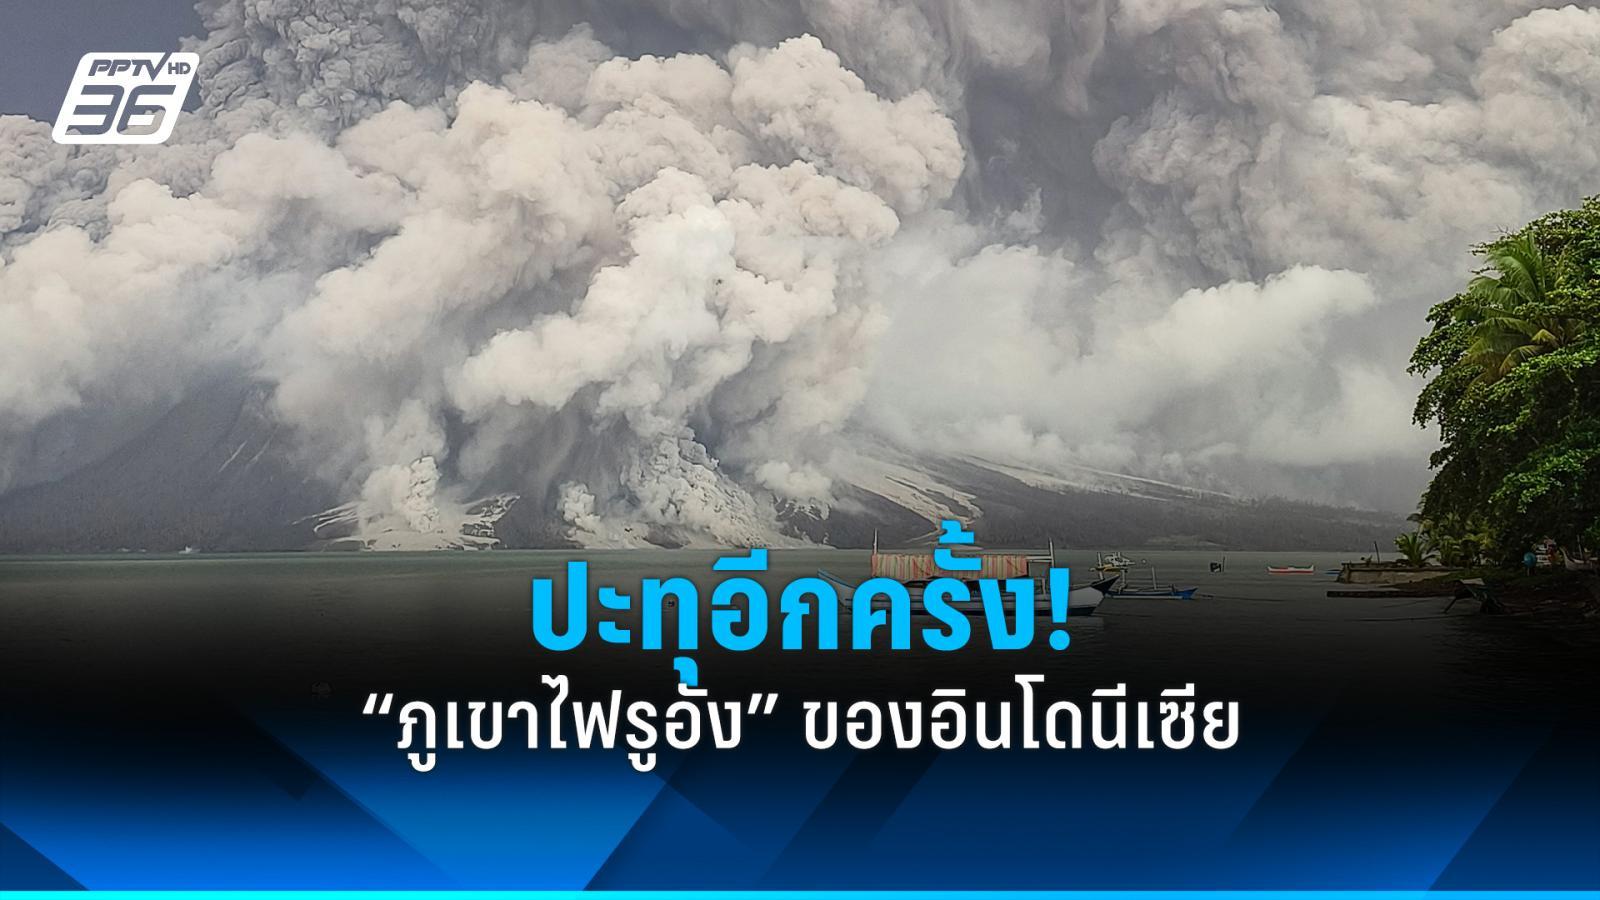 “ภูเขาไฟรูอัง” ของอินโดนีเซียปะทุอีกครั้ง ต้องสั่งปิดสนามบินใกล้เคียง